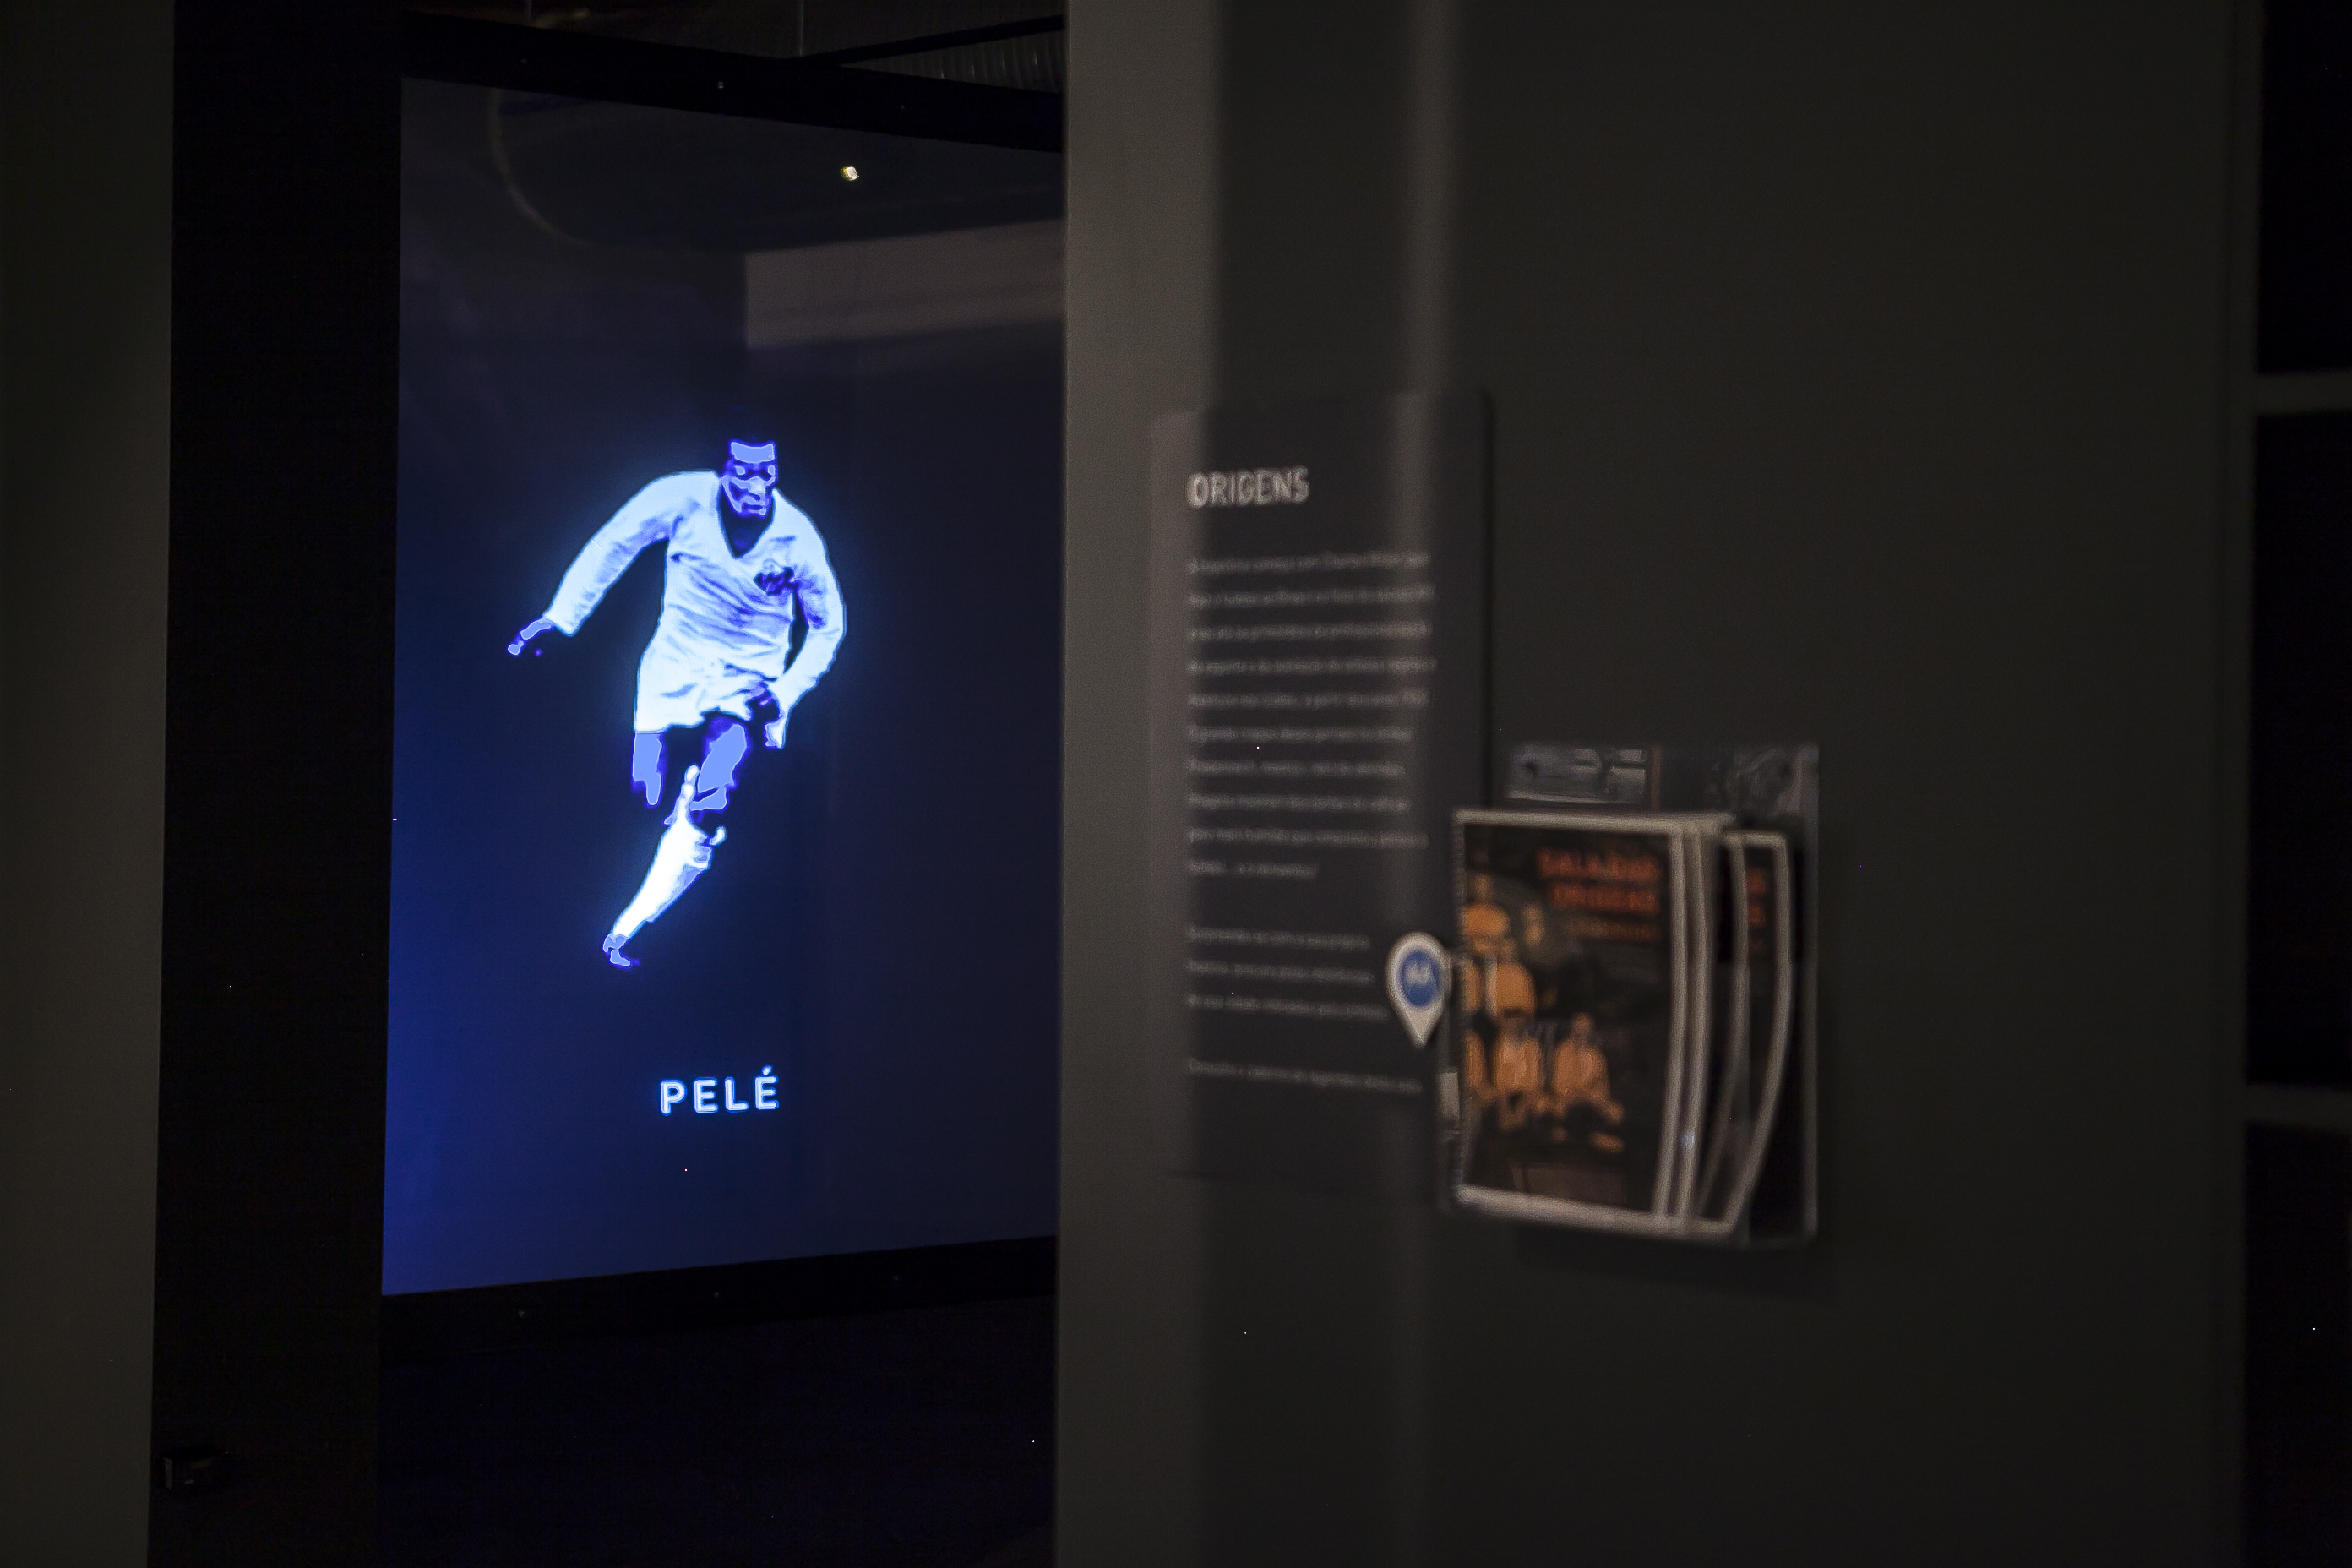 Livros grátis sobre Djalma Santos para os visitantes — Museu do Futebol